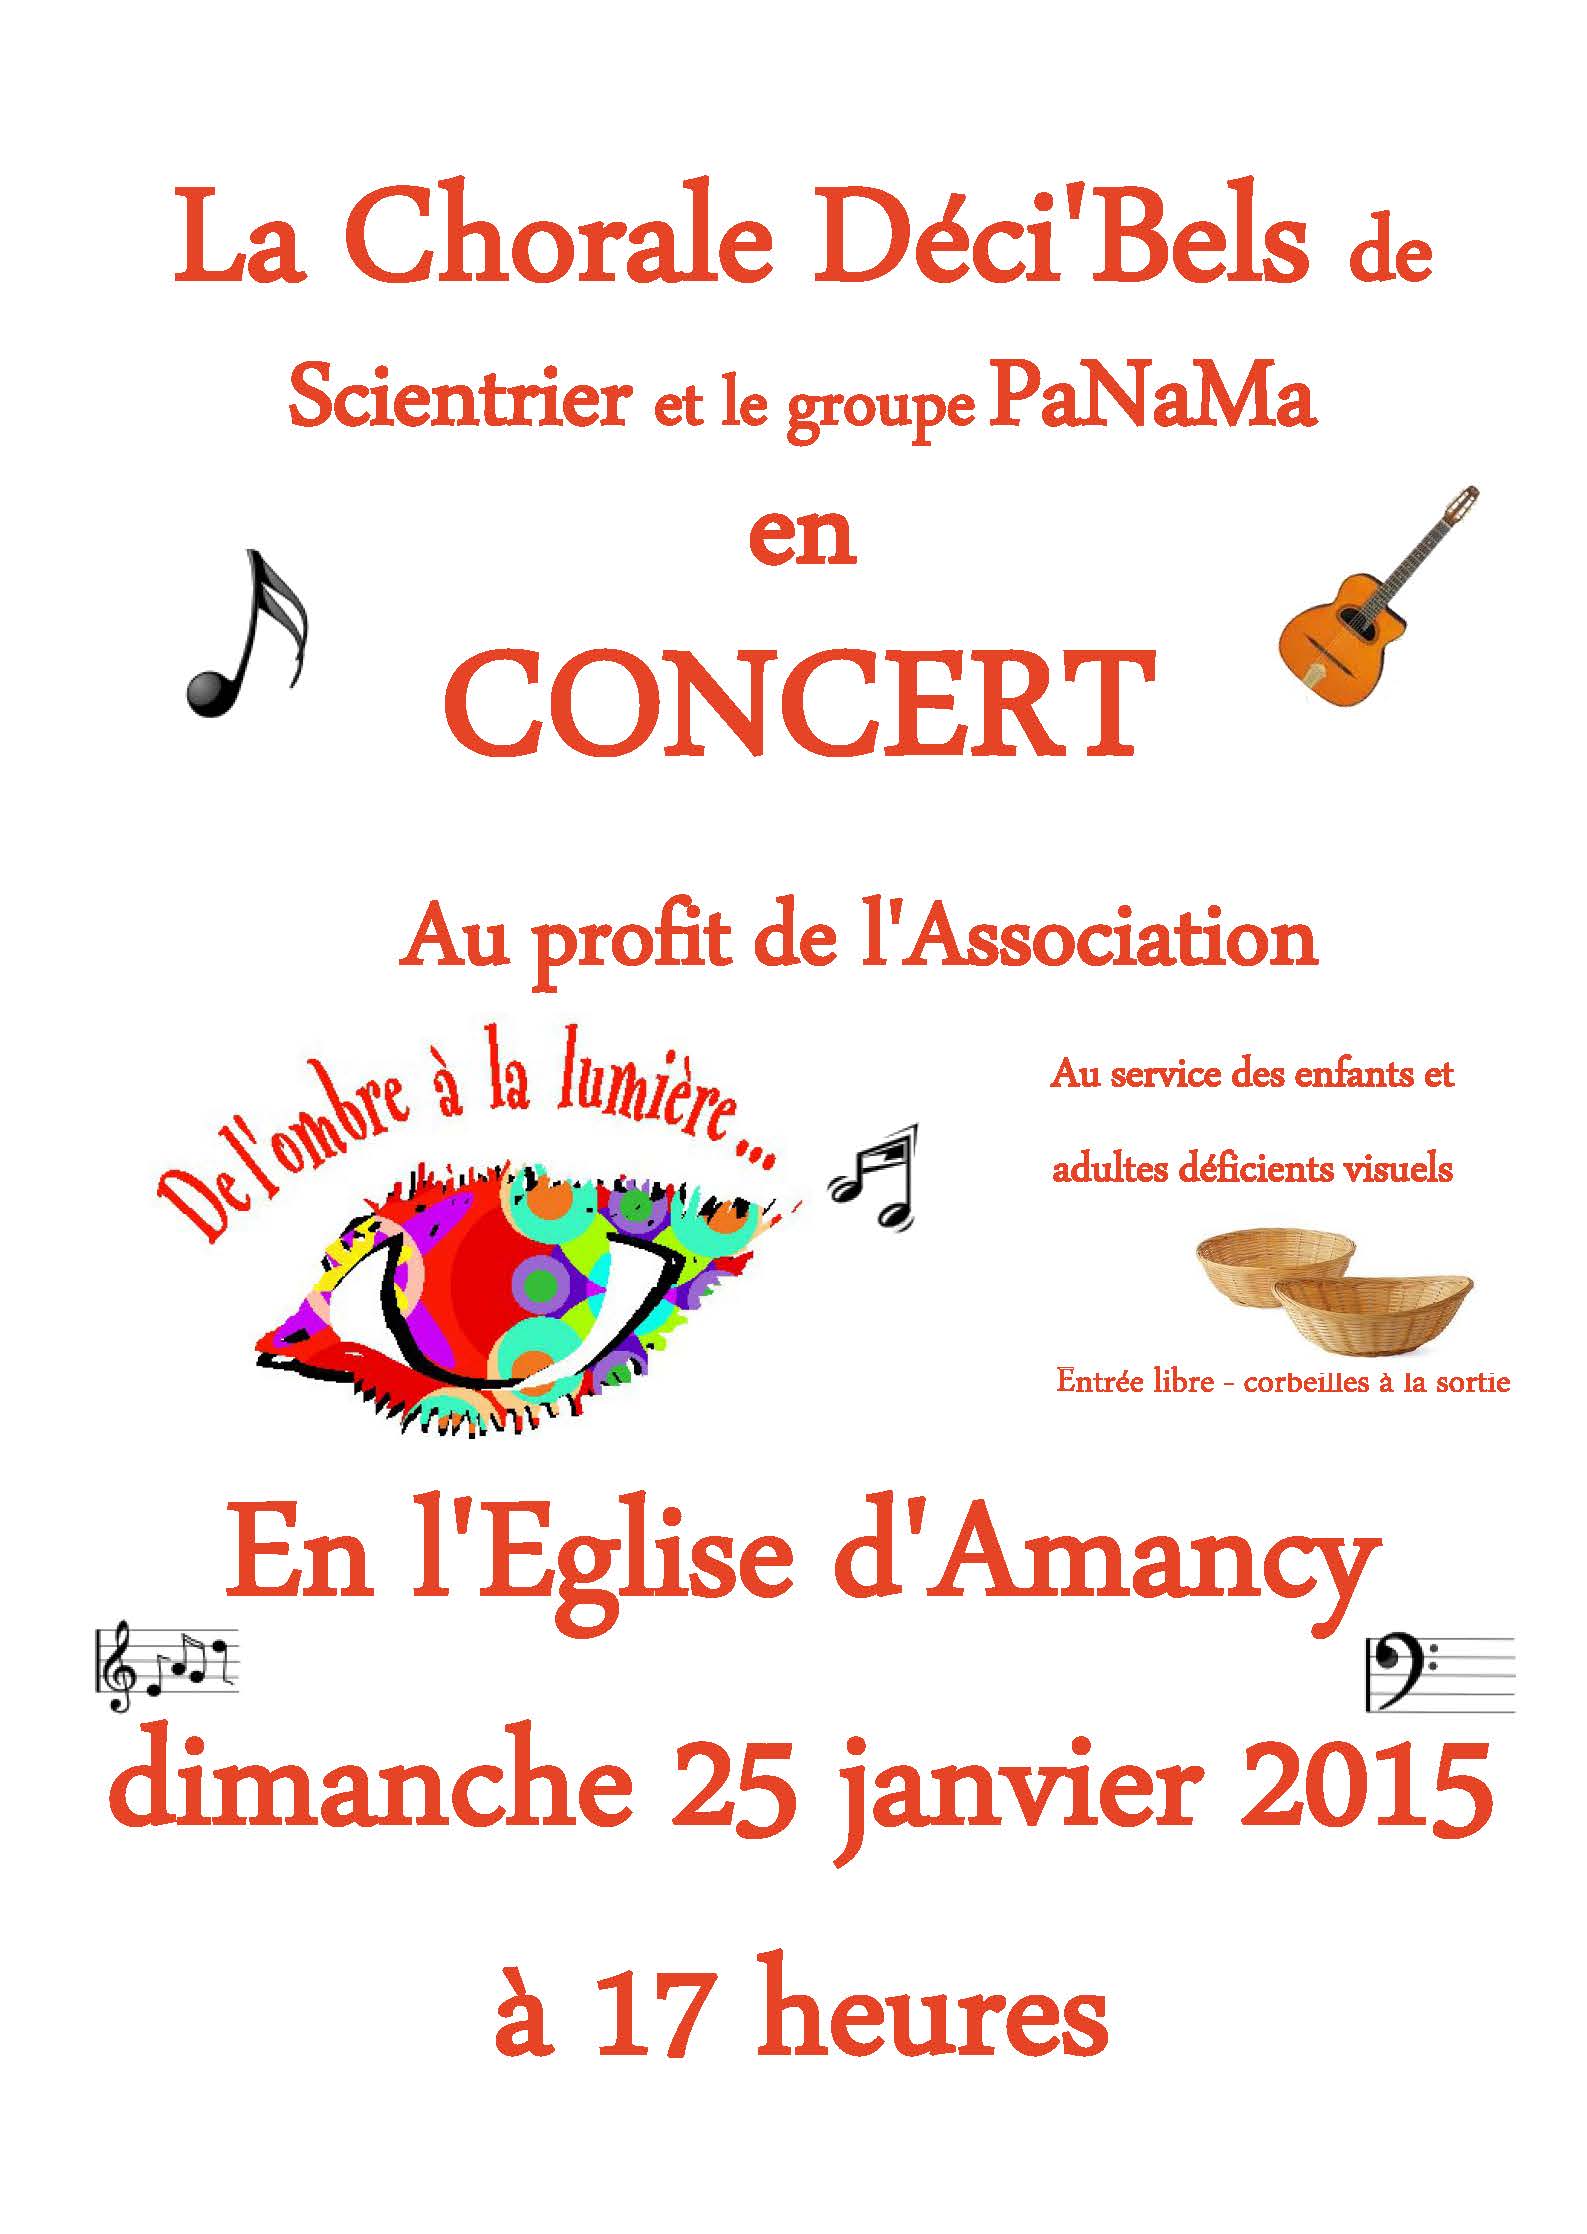 Affiche pour annoncer le concert de la chorale Déci'Bels à Amancy